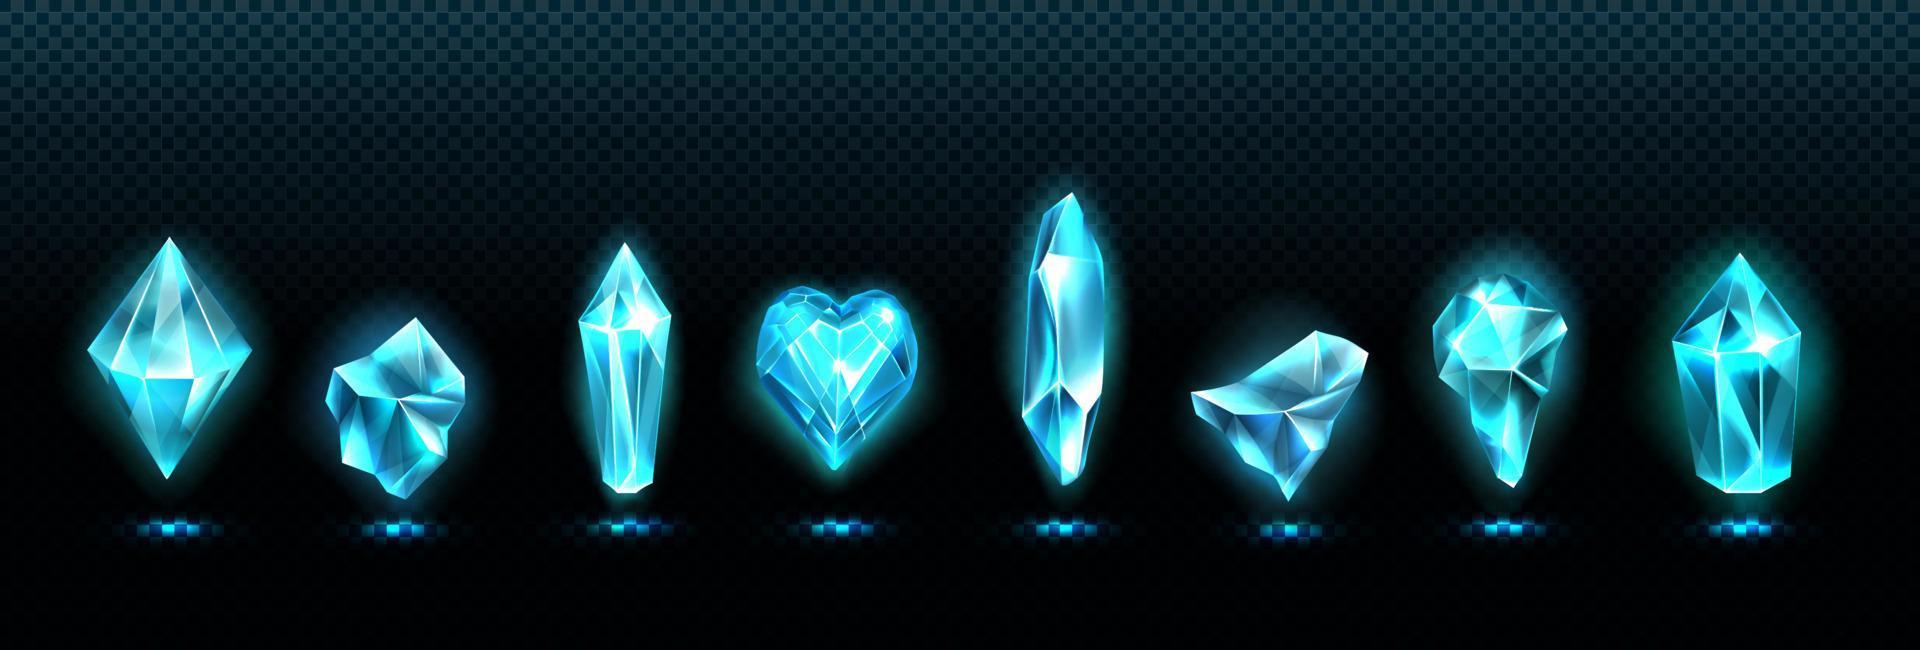 piedras preciosas de esmeralda, cristales de vidrio azul brillante vector